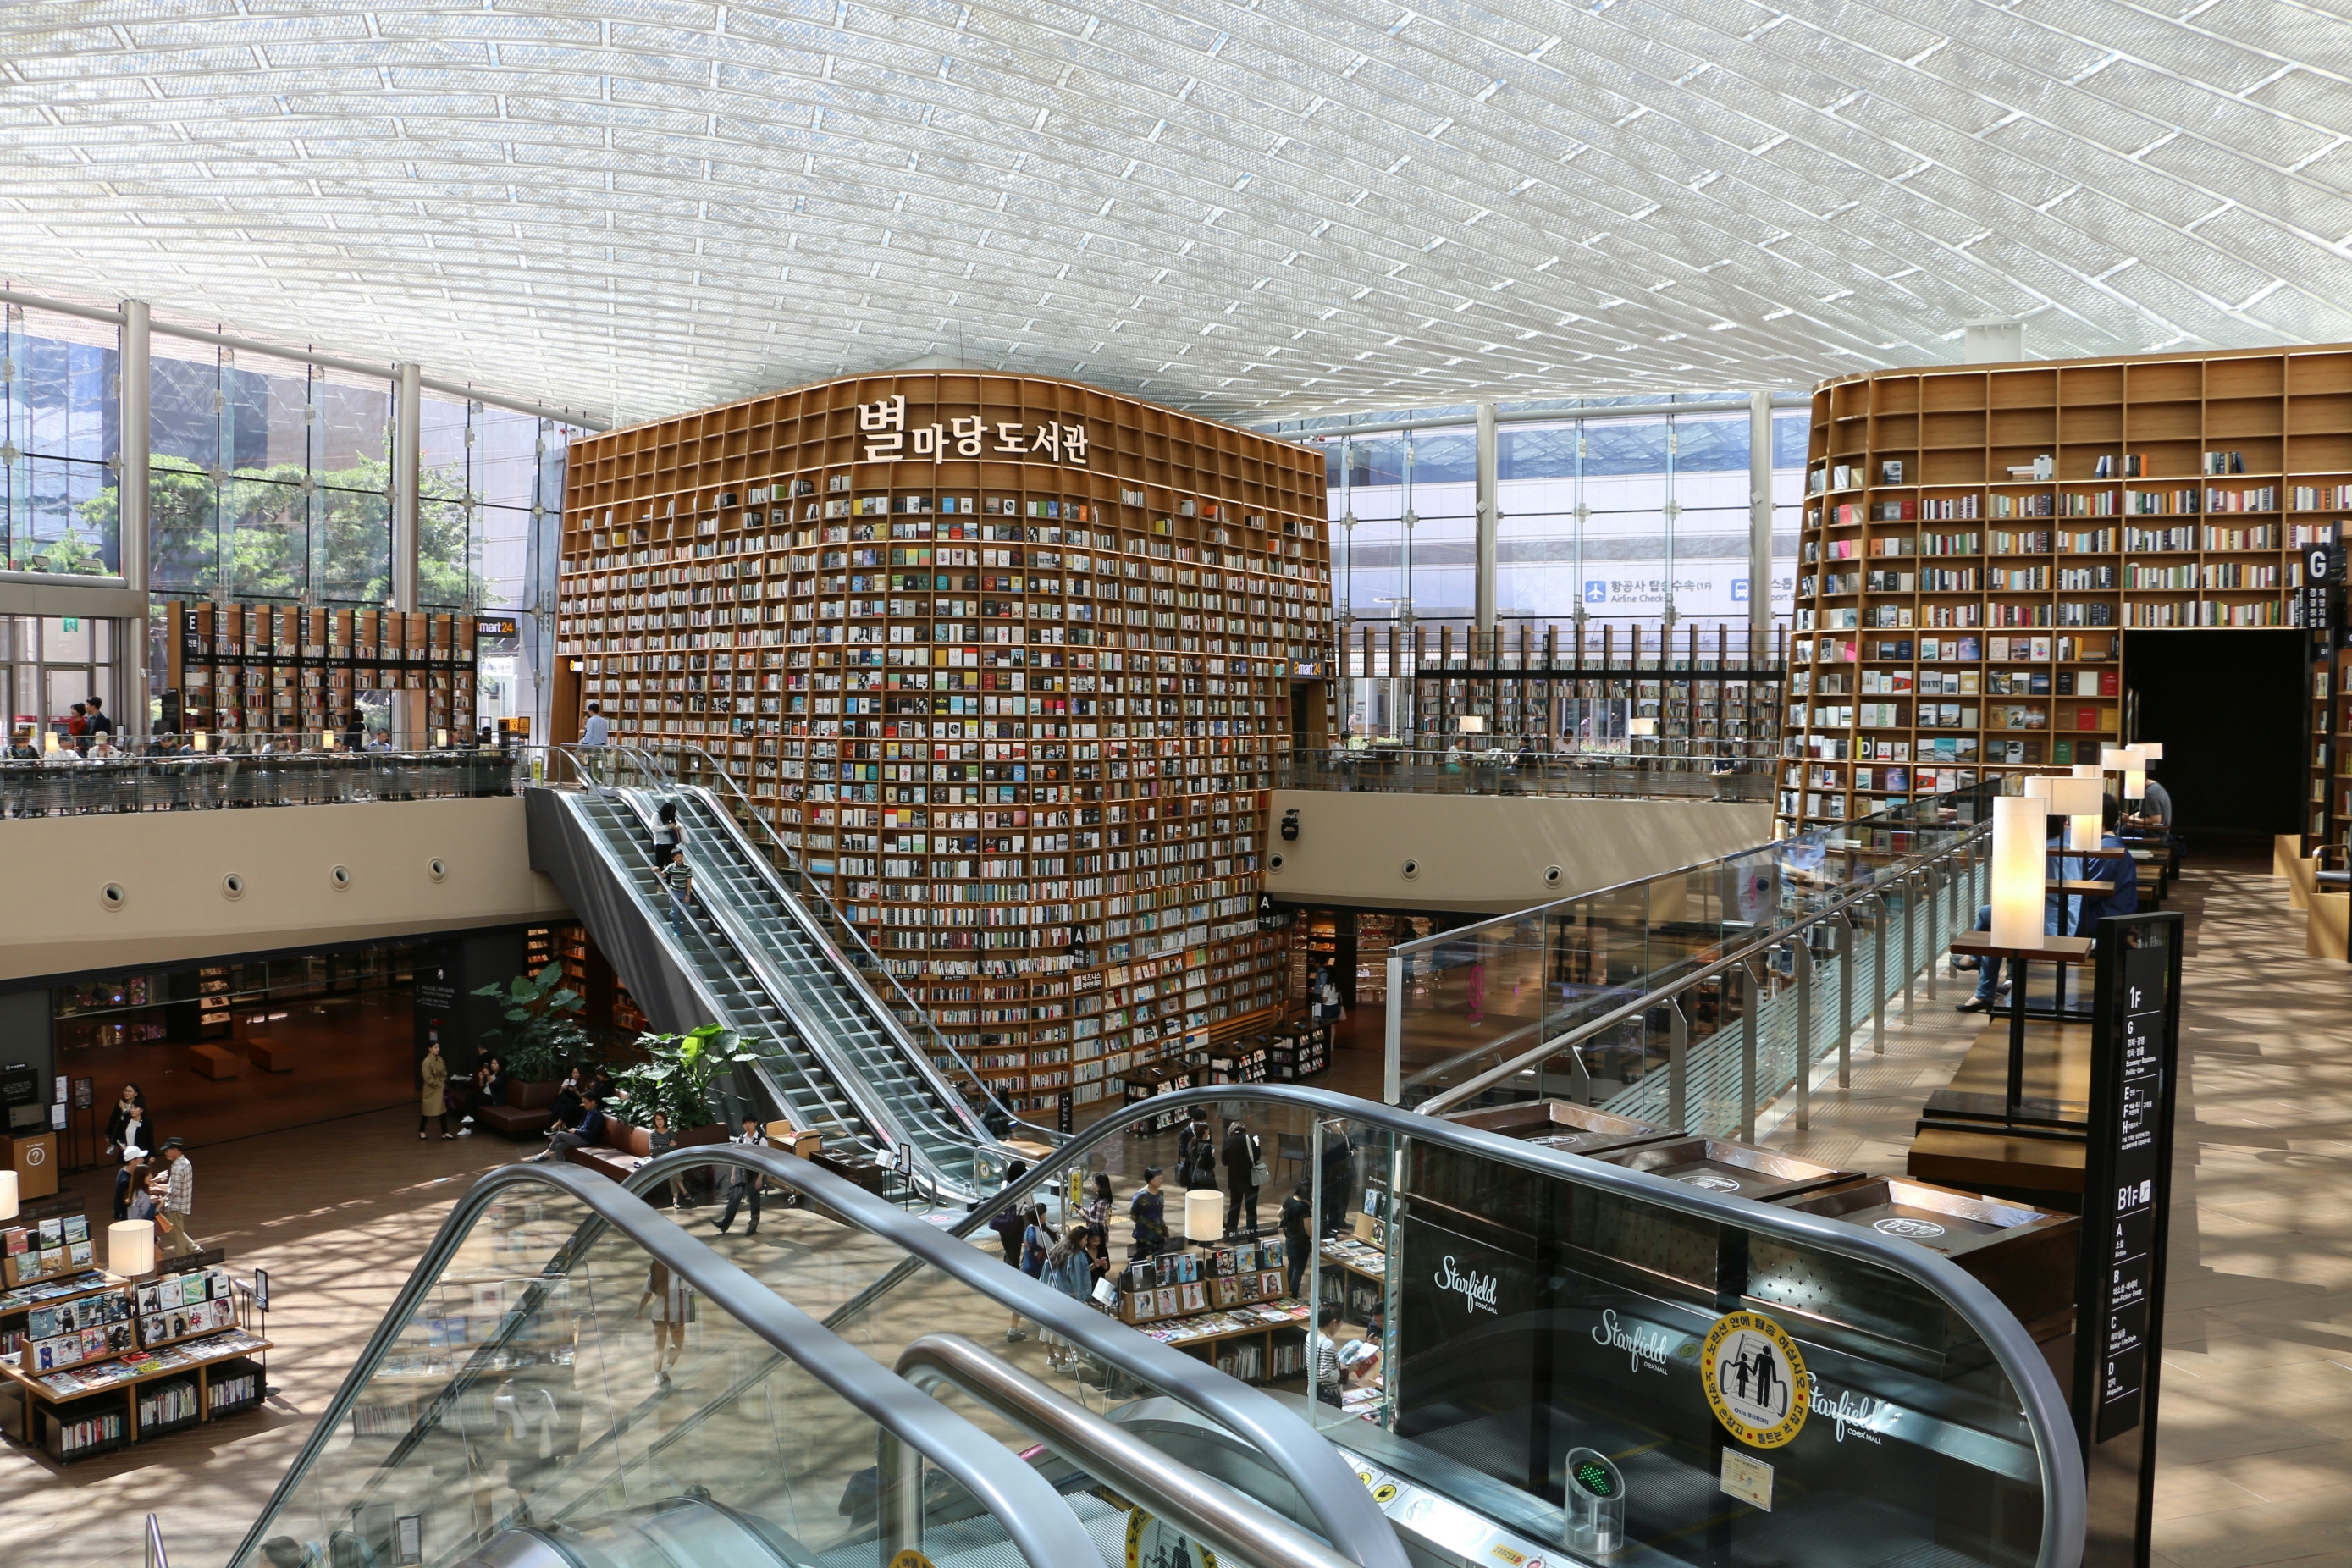 Ova knjižnica nije kao druge: Police su visoke 21 metar i sadrže preko 36 tisuća knjiga